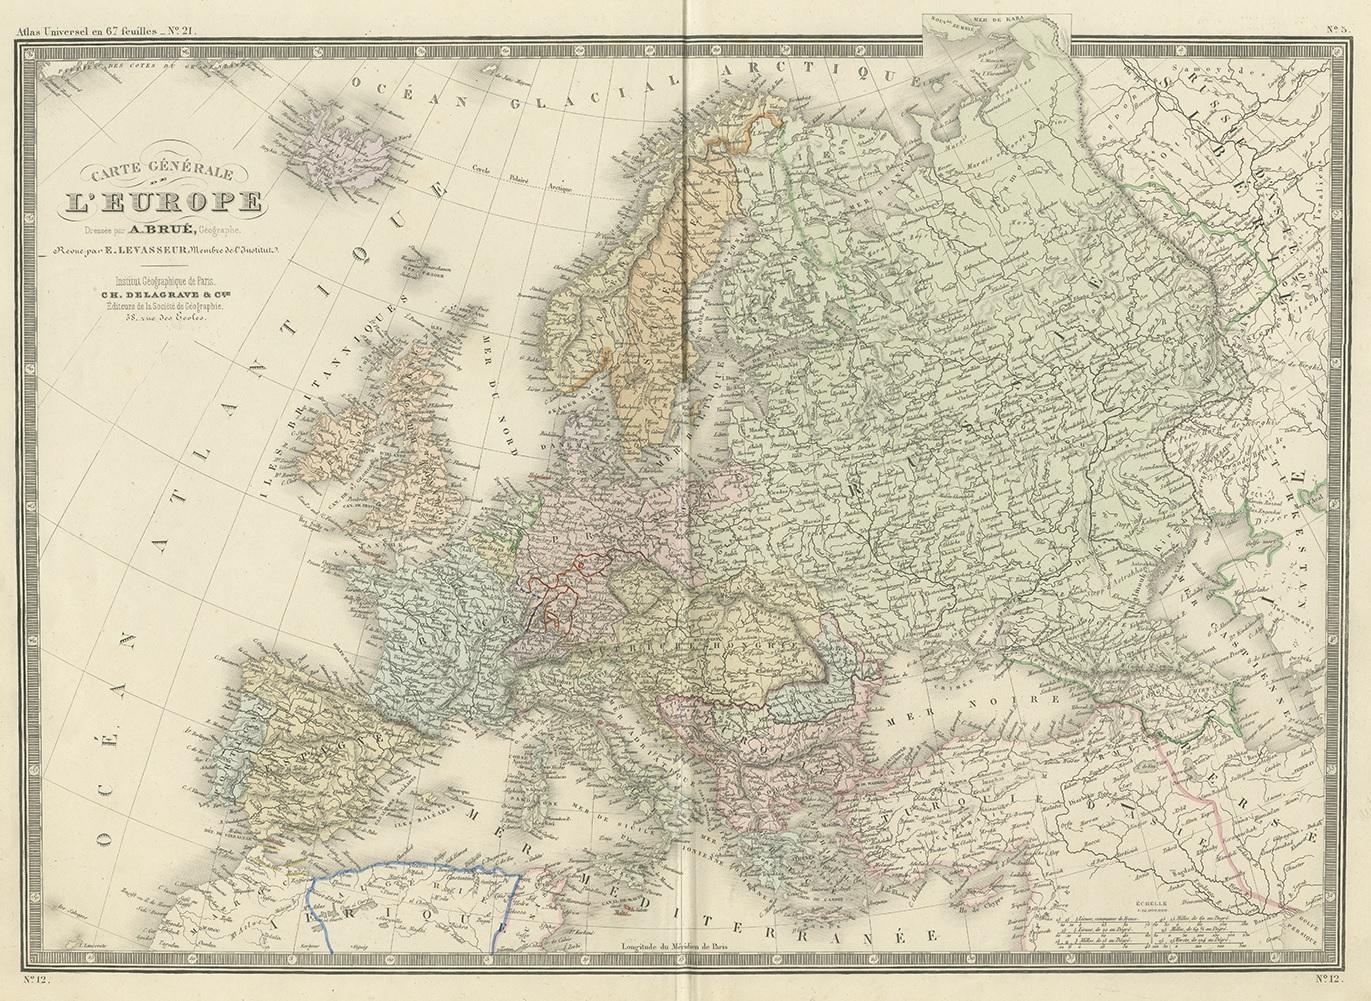 Antique map titled 'Carte générale de l'Europe'. Large map of Europe. This map originates from 'Atlas de Géographie Moderne Physique et Politique' by A. Levasseur. Published 1875.